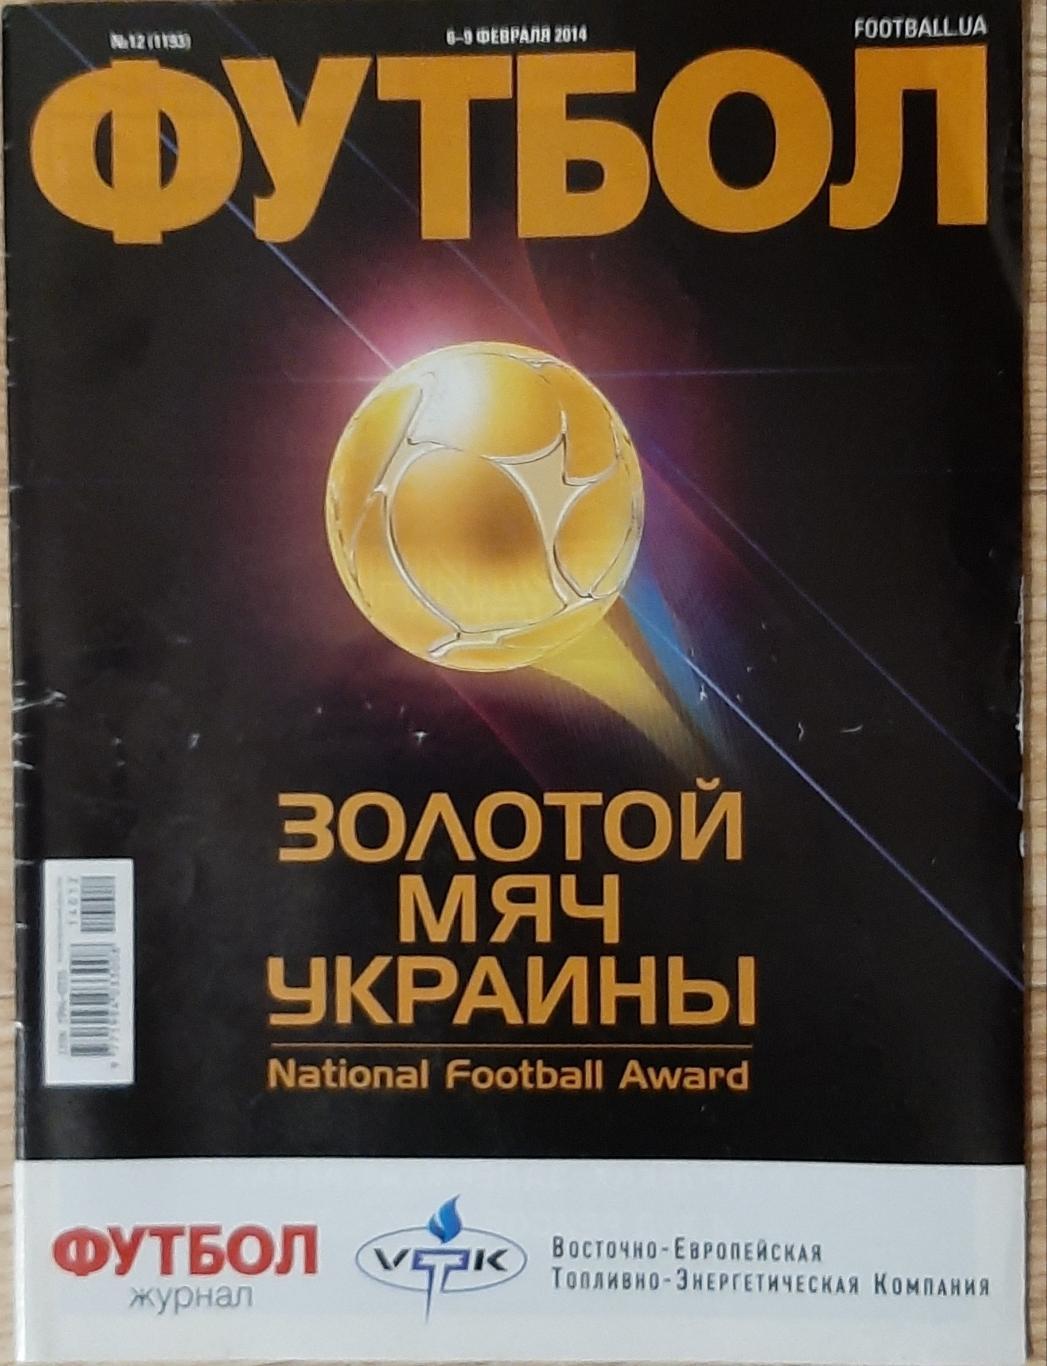 Футбол #12 (6-9.02.2014) О.Протасоа -50